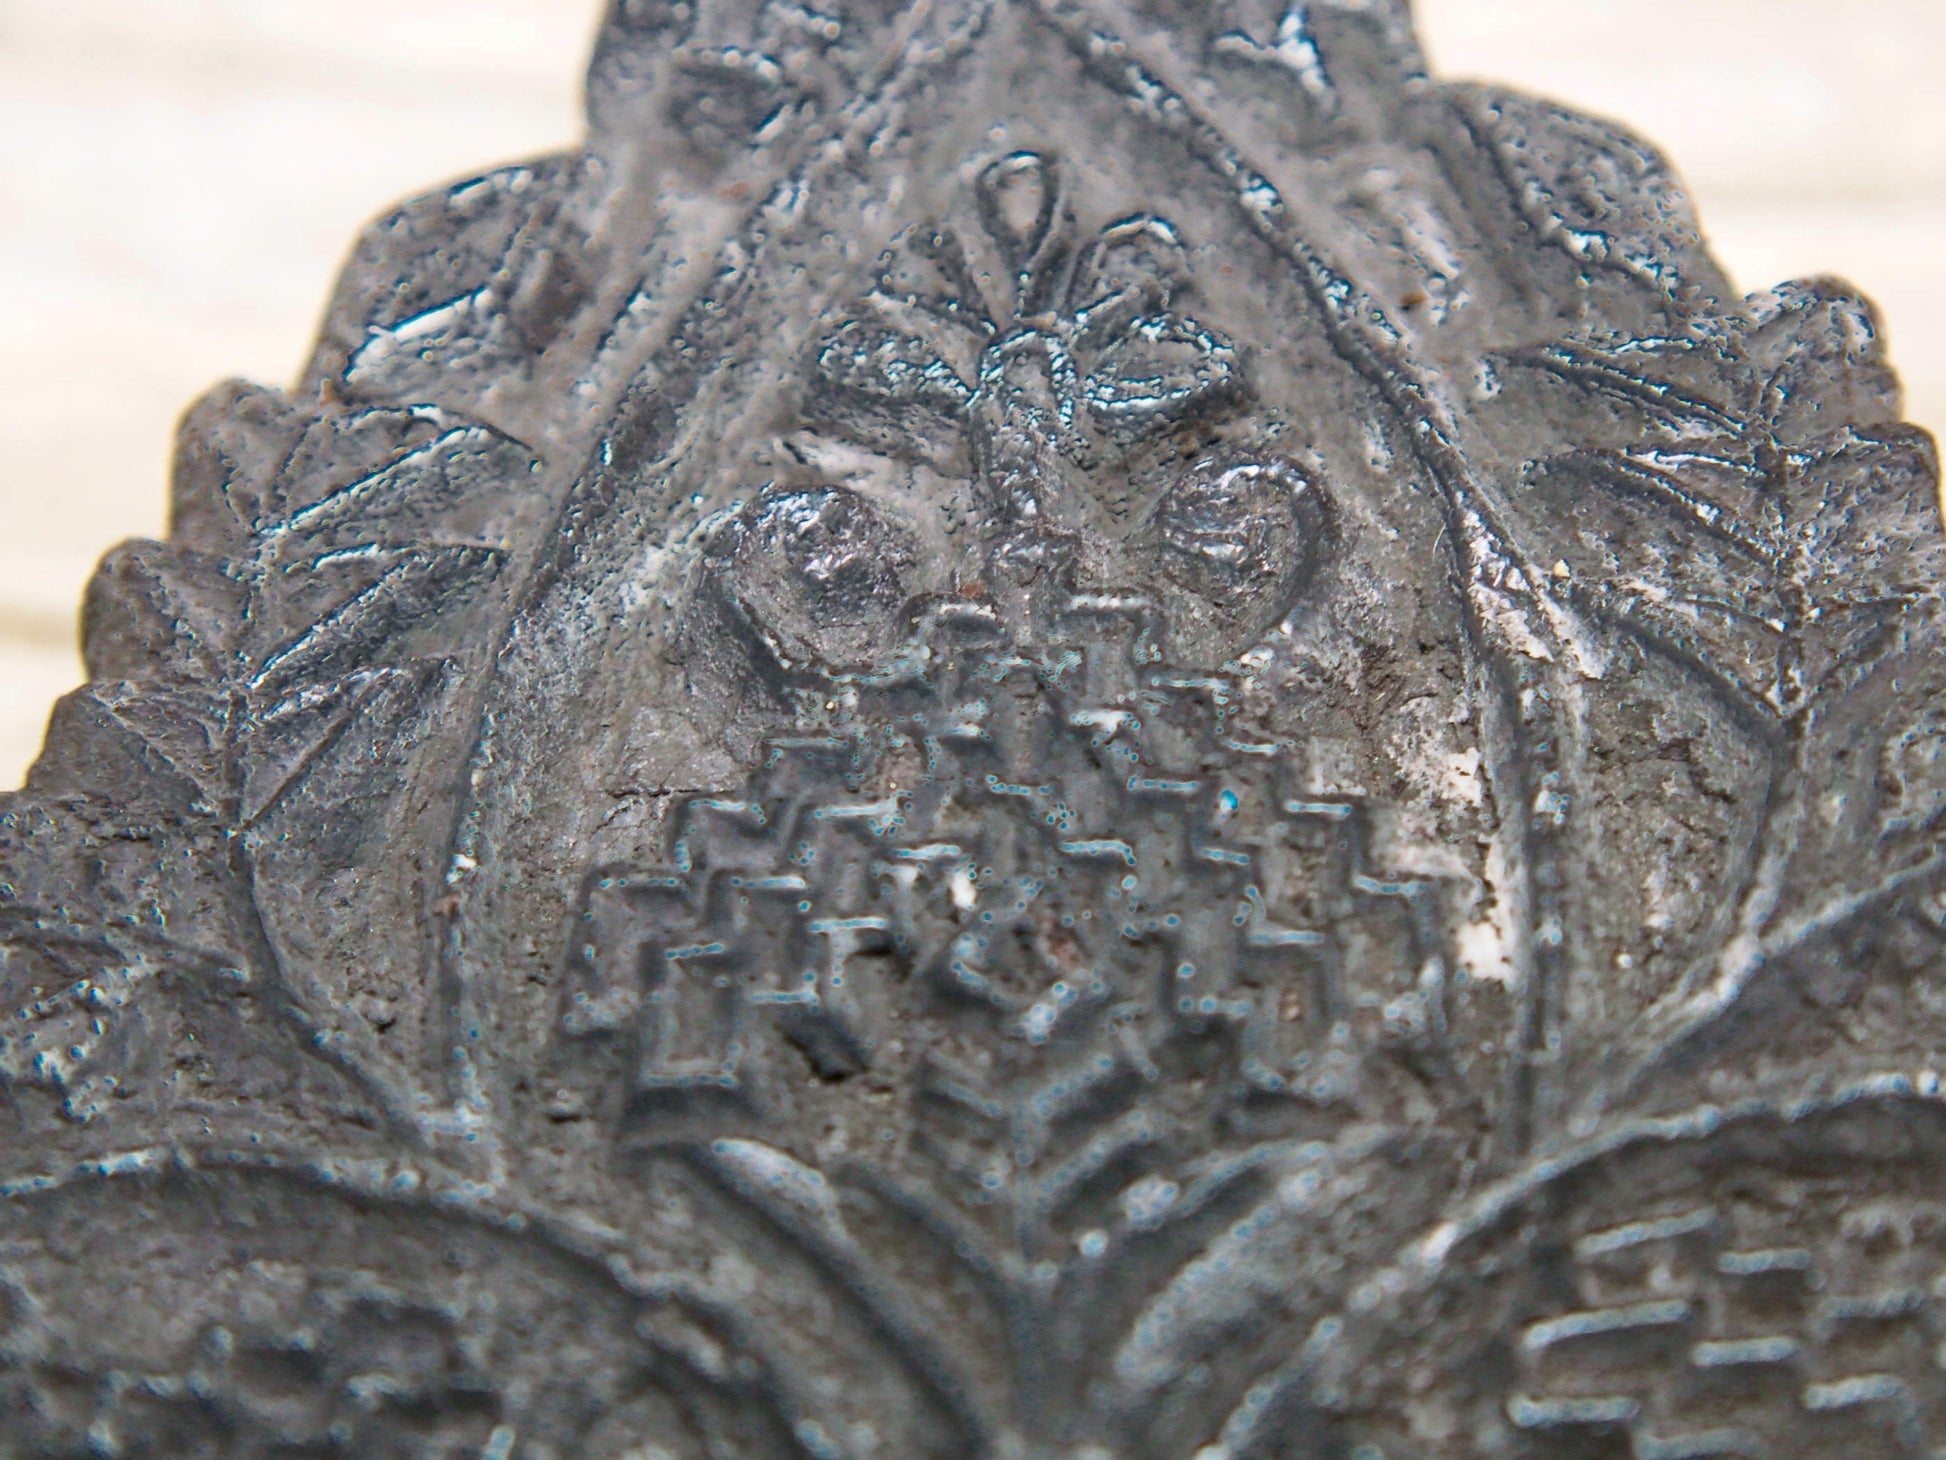 Vecchio timbro artigianale in legno per tessuti usato in India per la tradizionale lavorazione print block. Ricavato da un unico pezzo di legno intagliato.  Dimensioni 13x20 h5cm